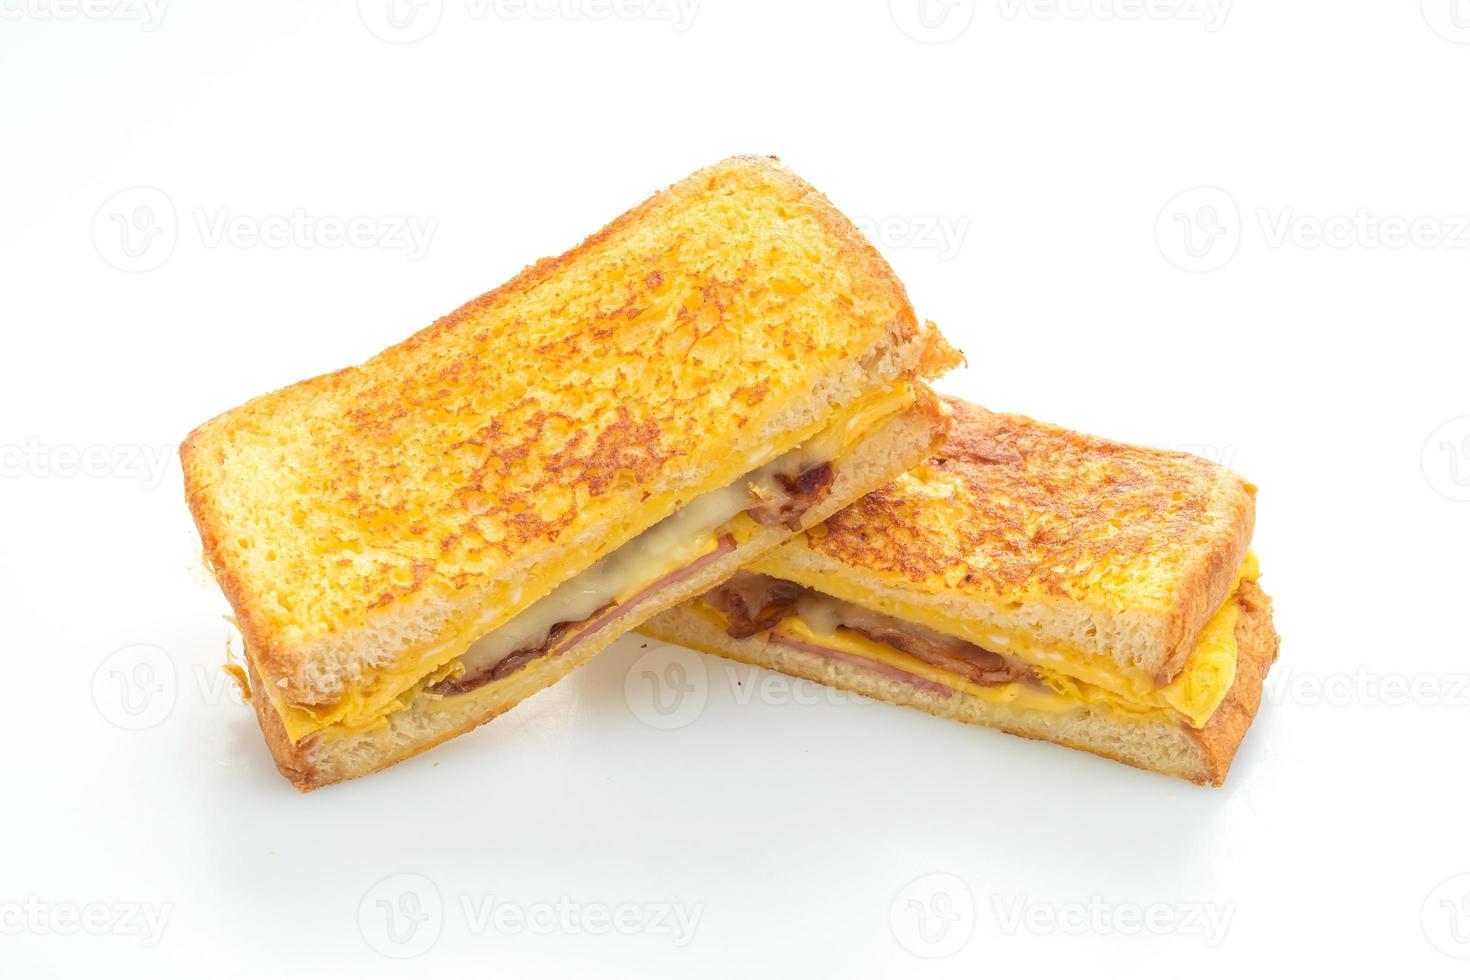 Pain doré jambon bacon fromage sandwich avec oeuf photo